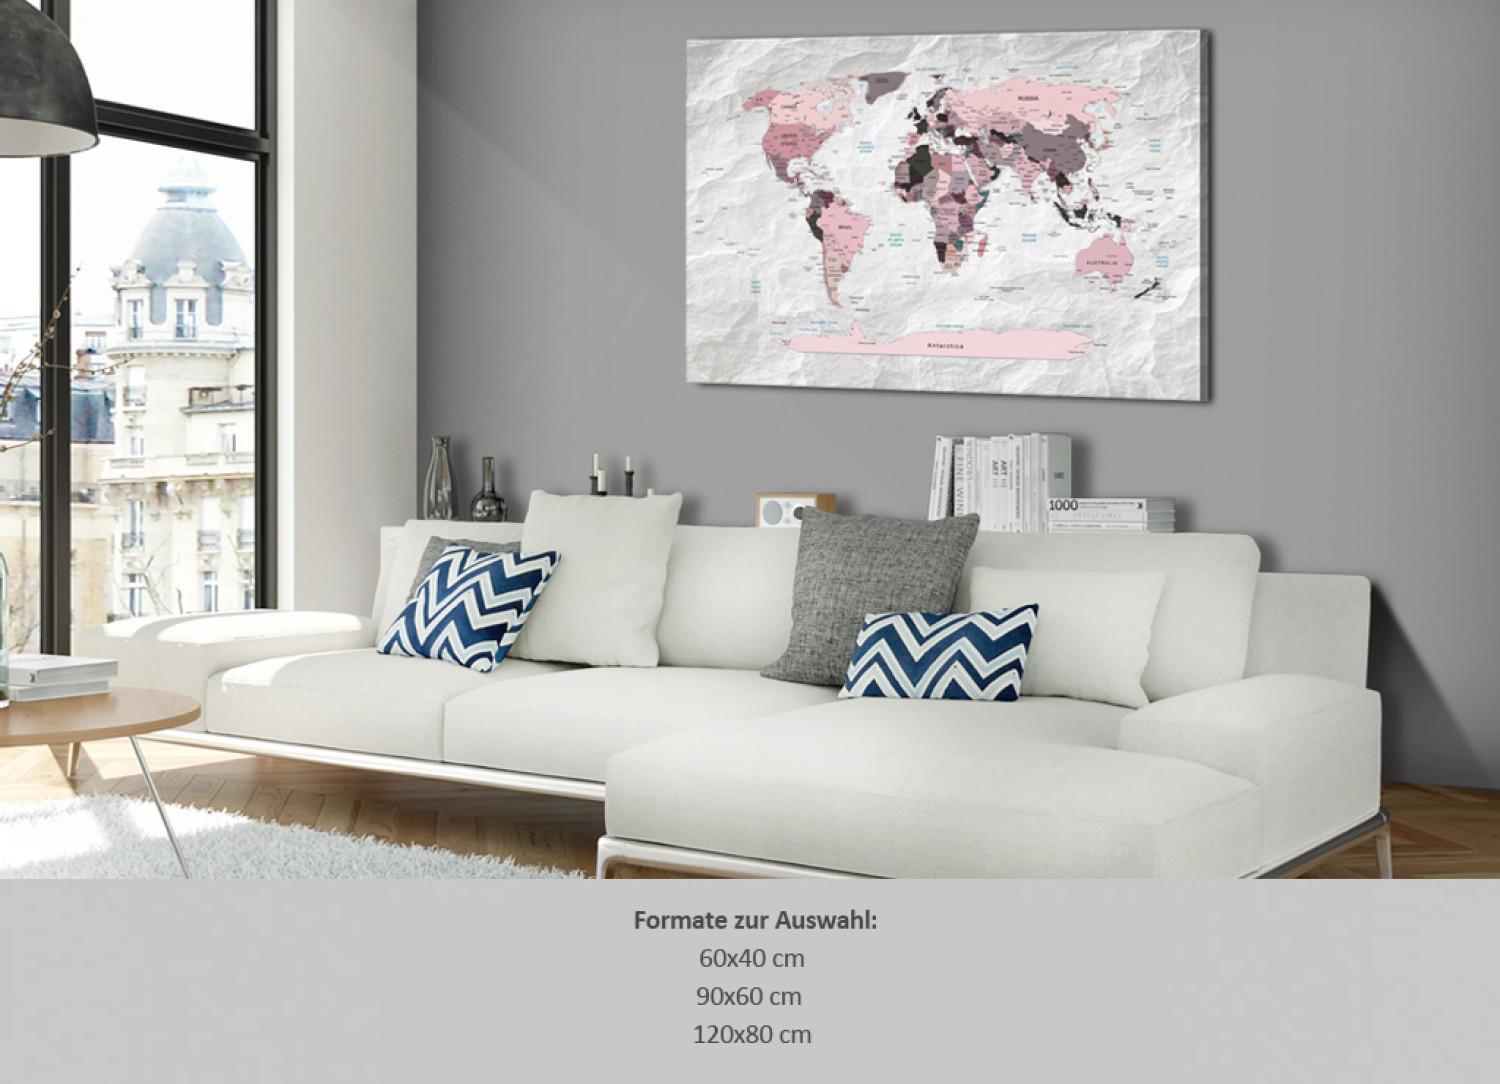 Tablero decorativo en corcho Pink Continents [Cork Map]